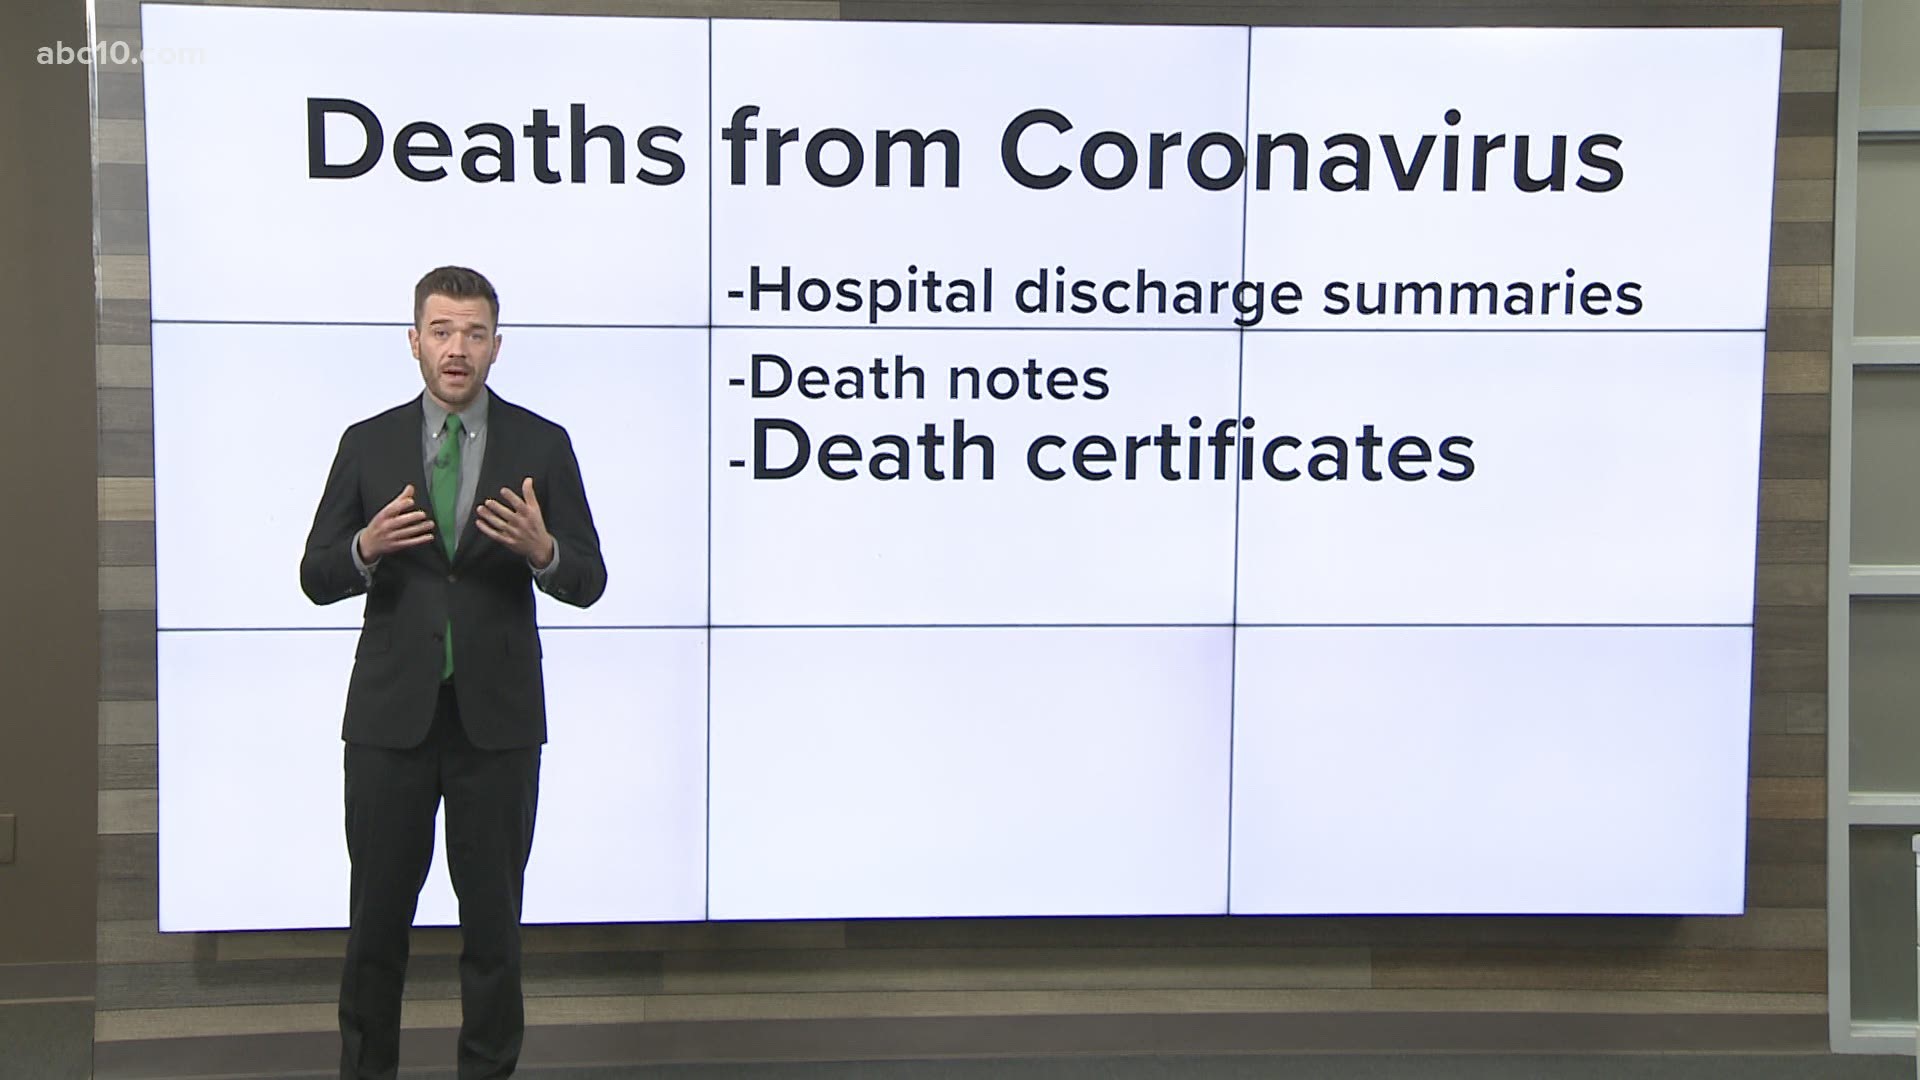 Mike Duffy breaks down coronavirus deaths by counties in California.